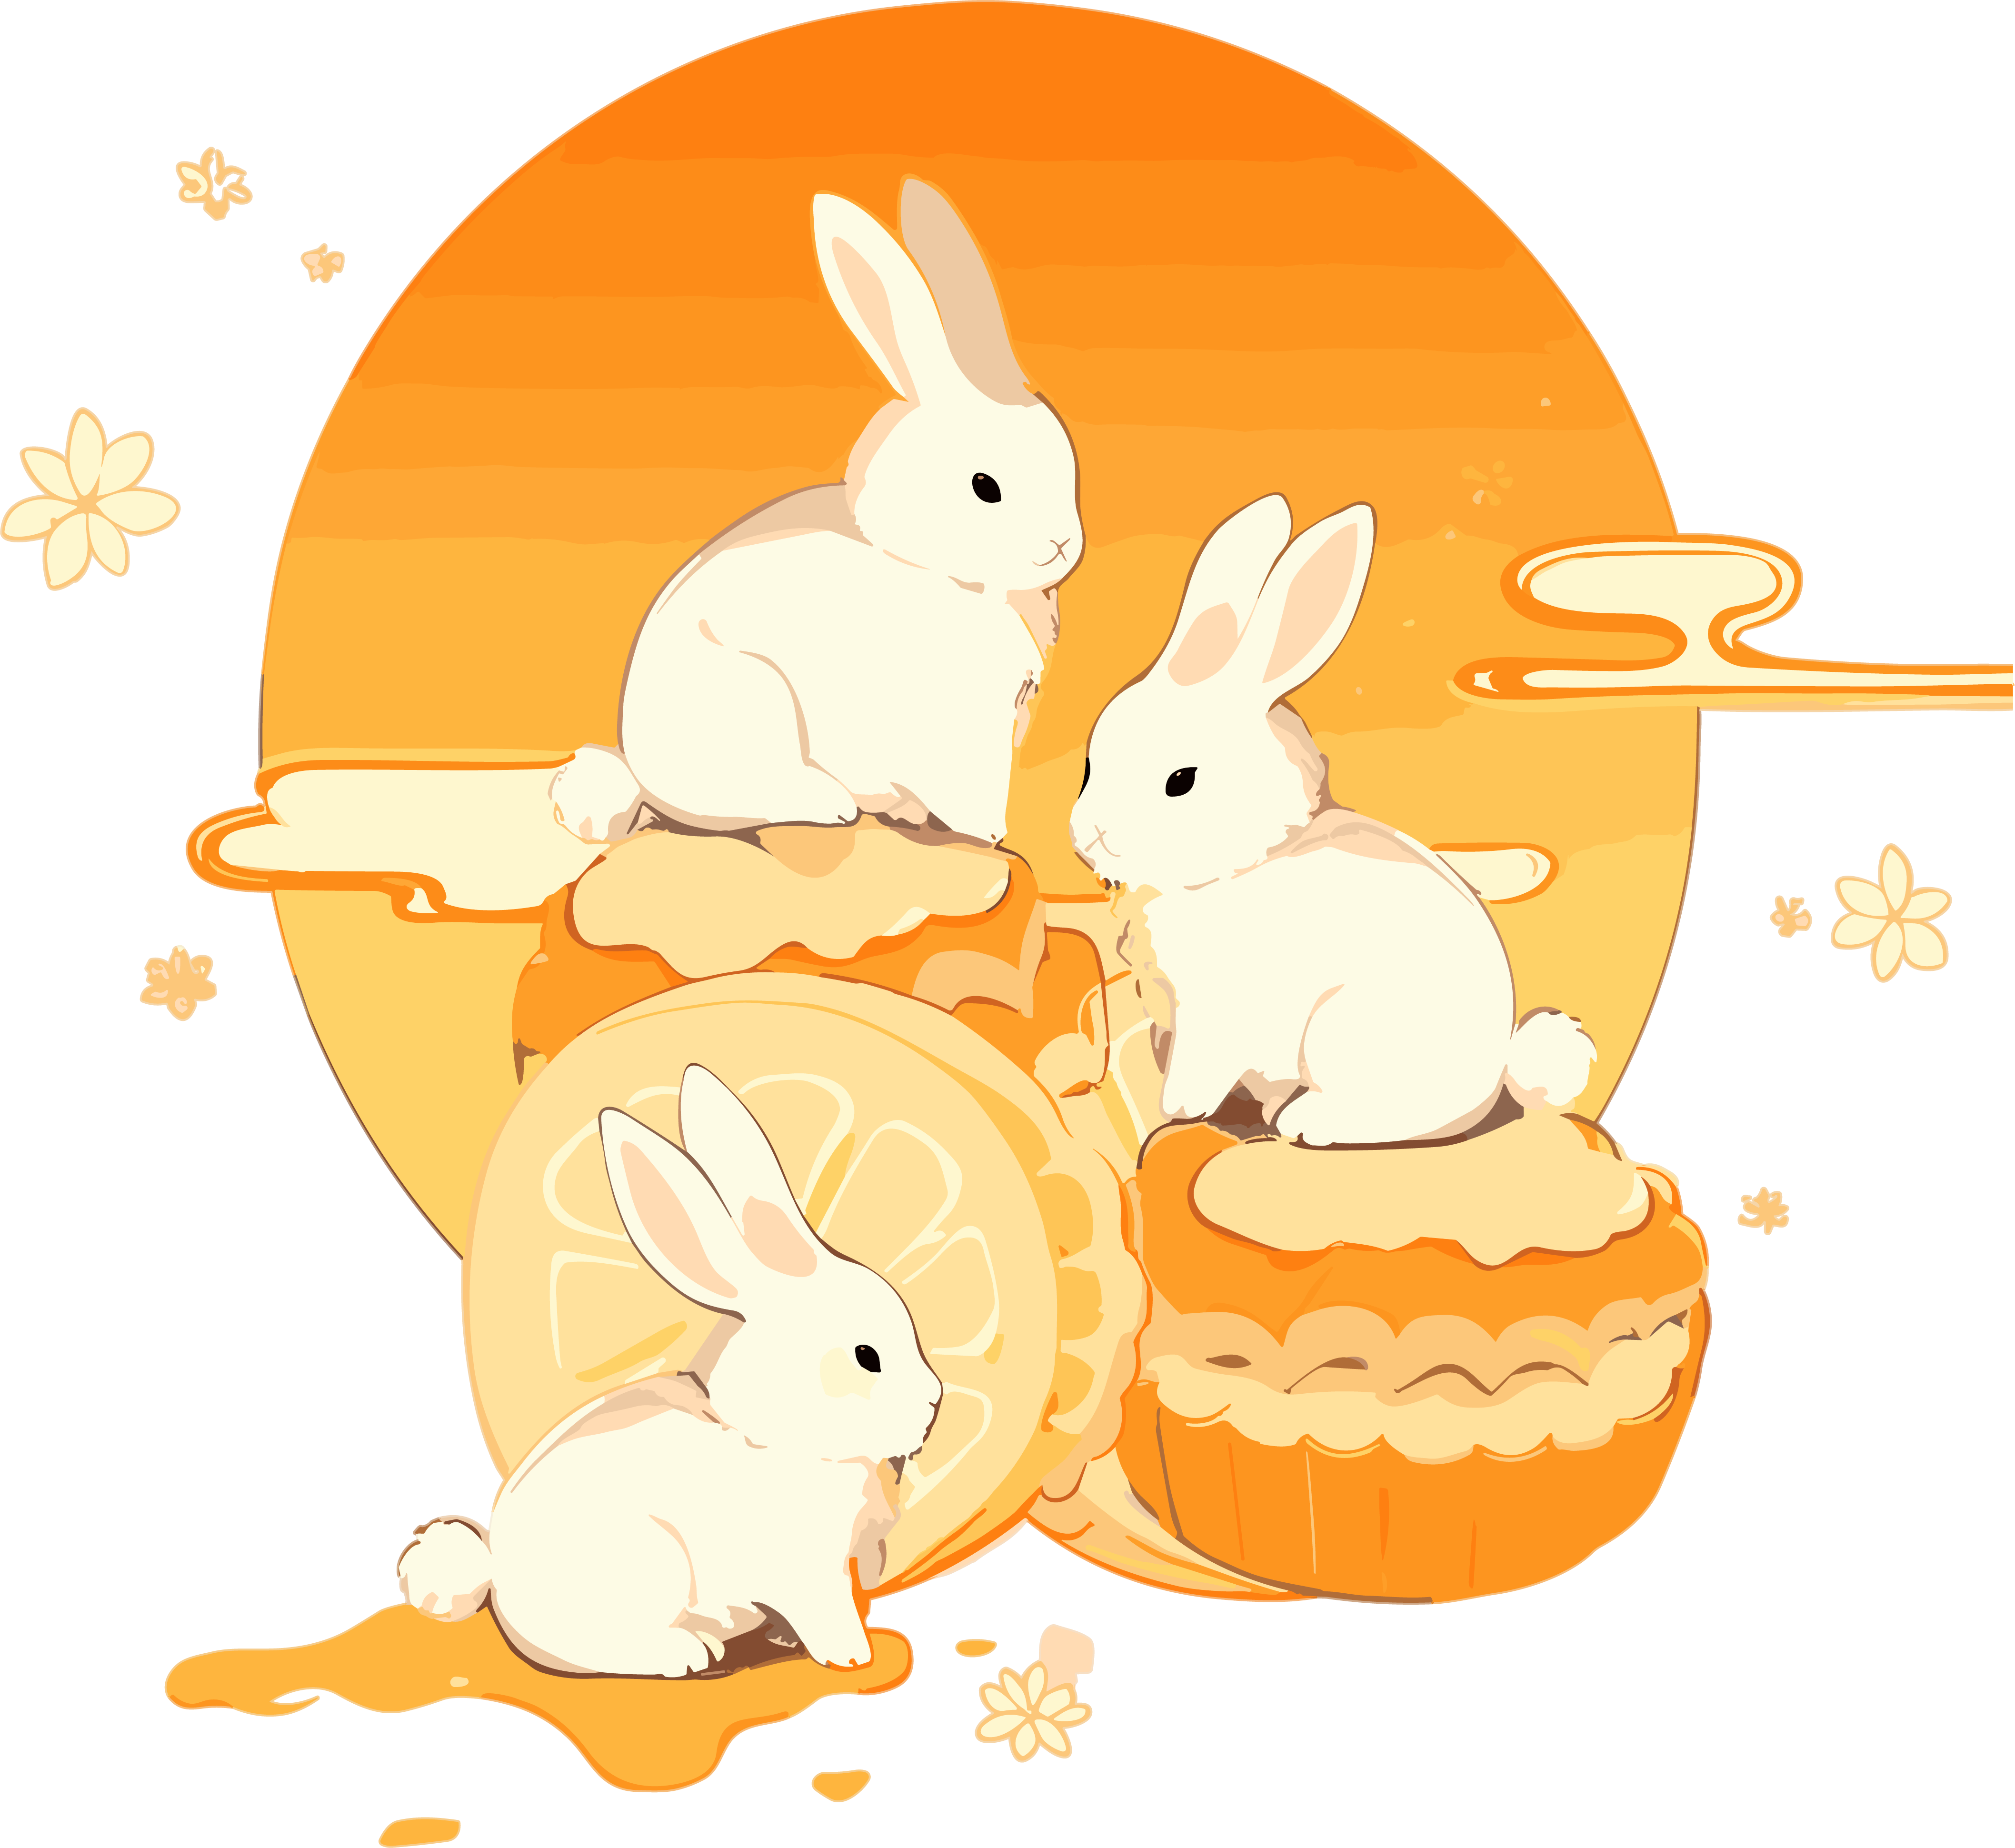 月饼与白兔可商用的创意设计元素PNG图形素材